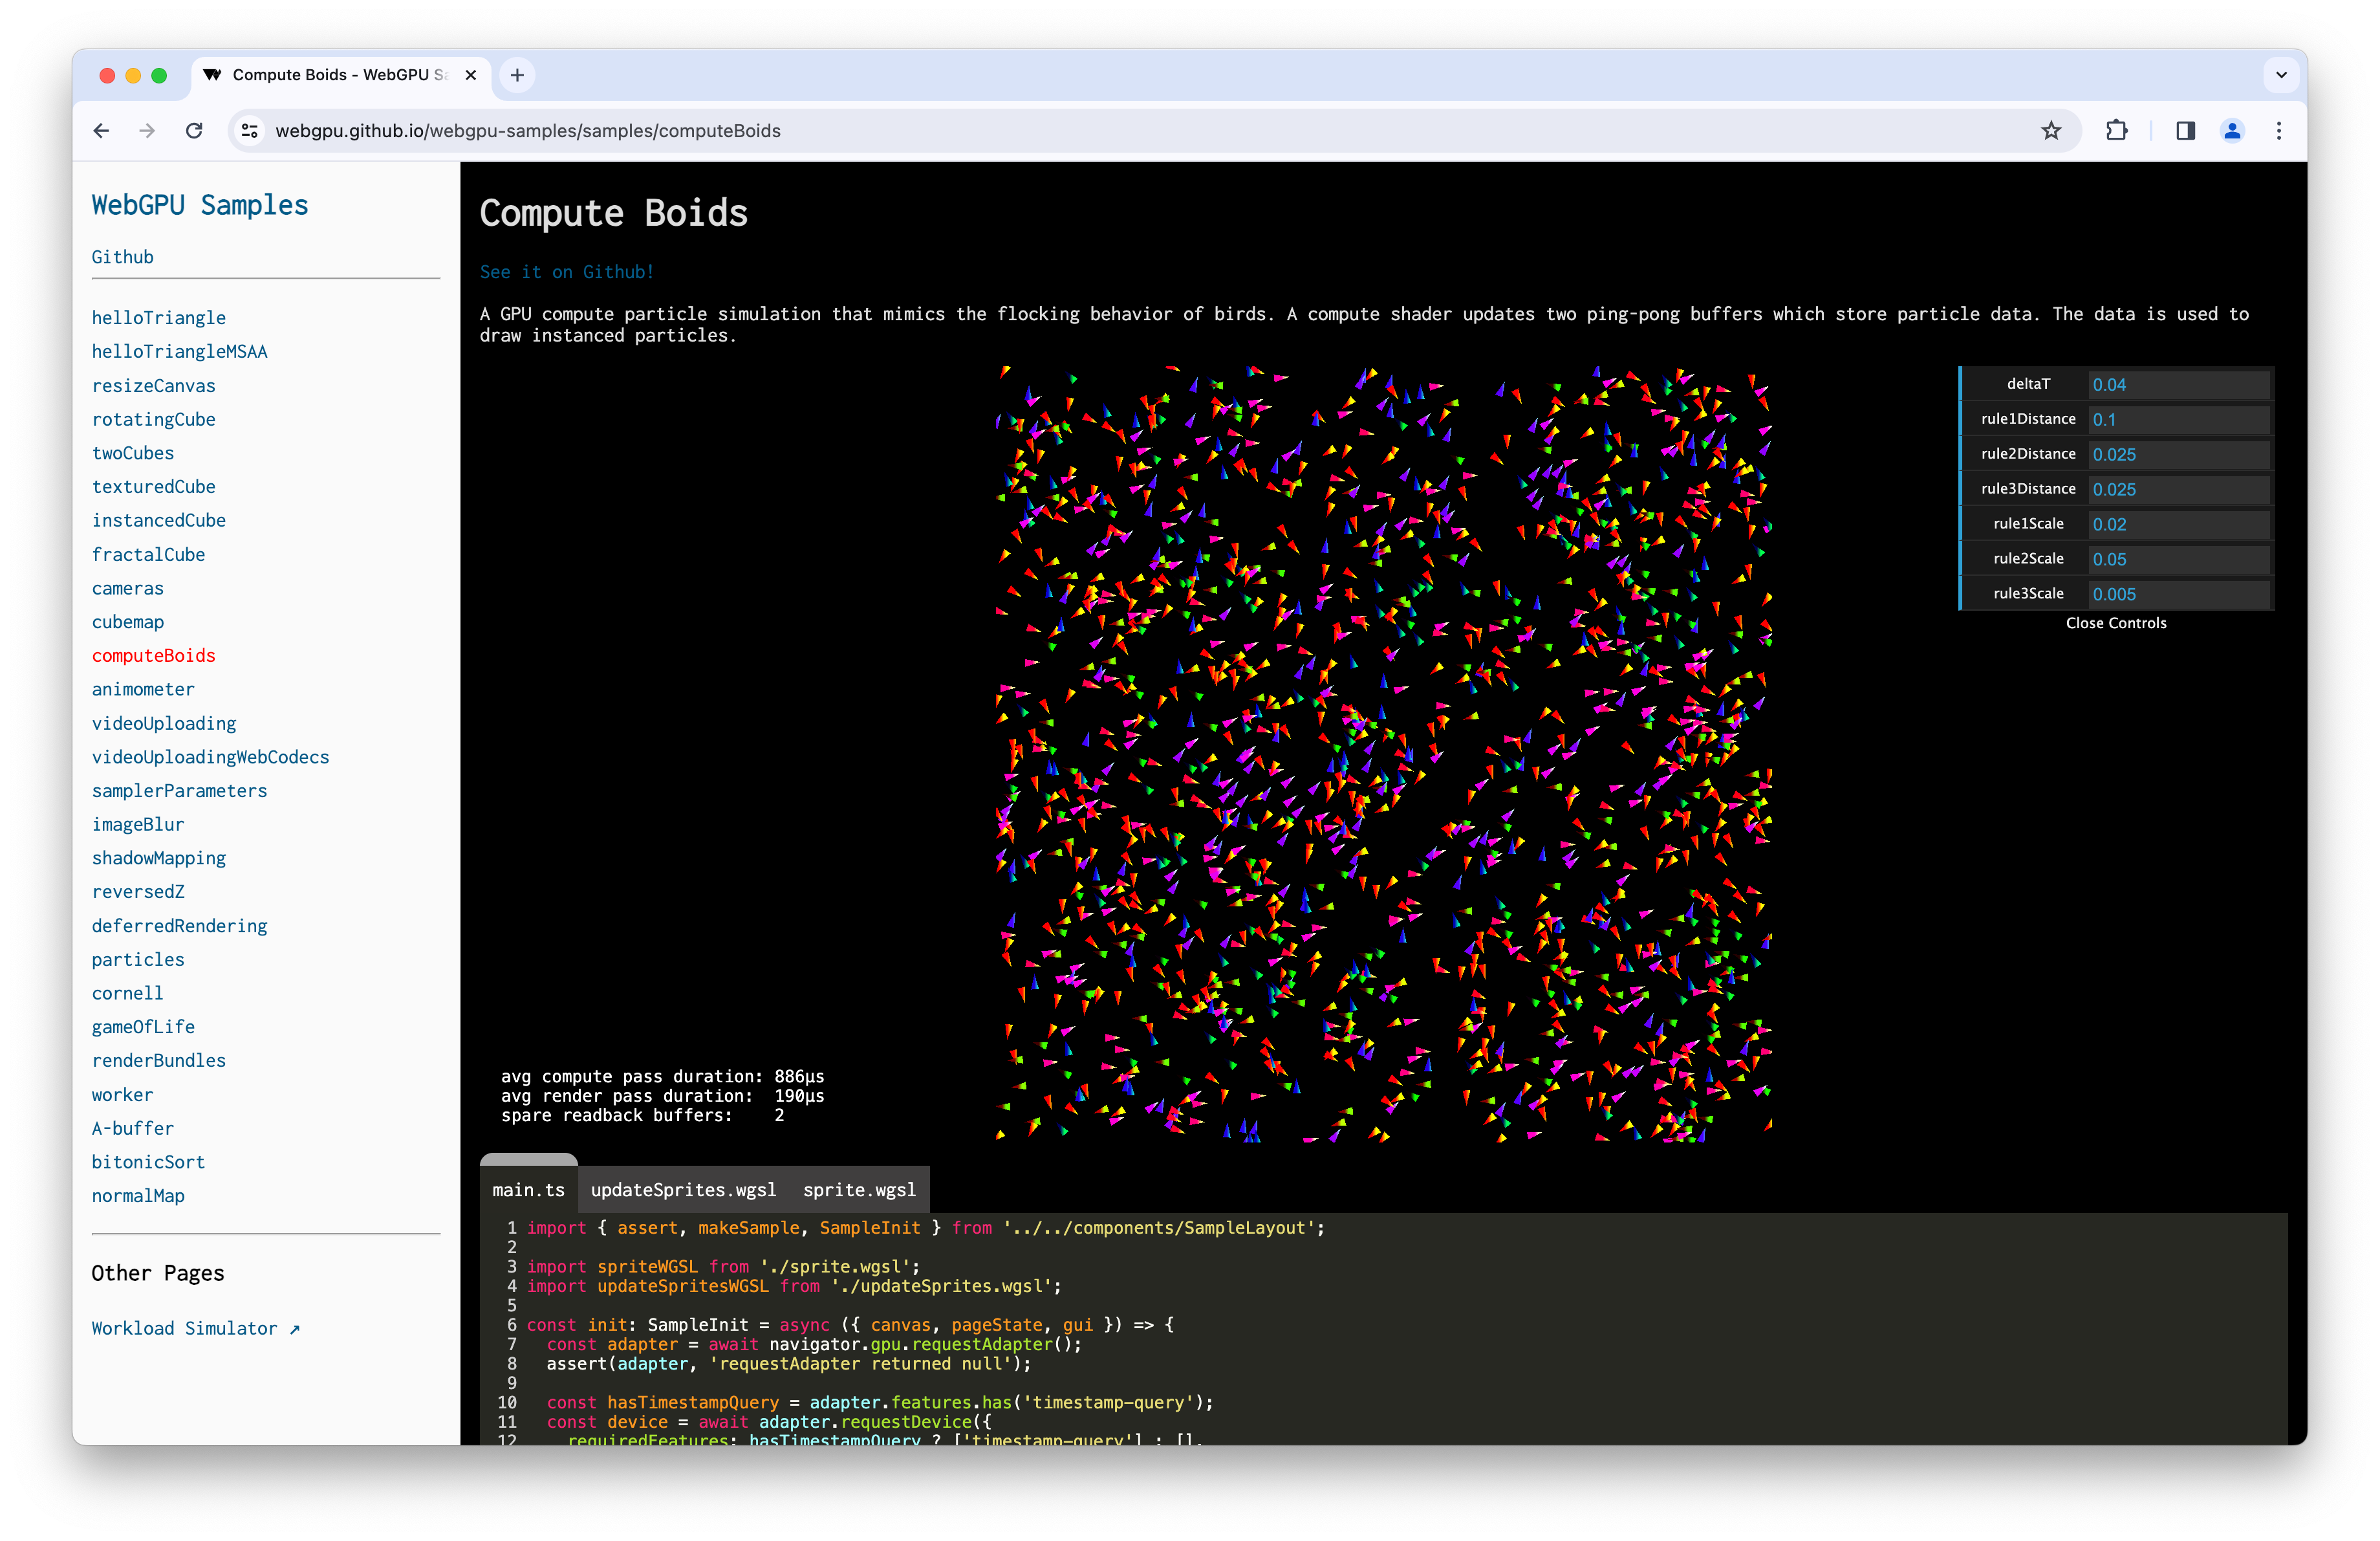 Captura de tela da amostra do Compute Boids com a consulta de carimbo de data/hora.